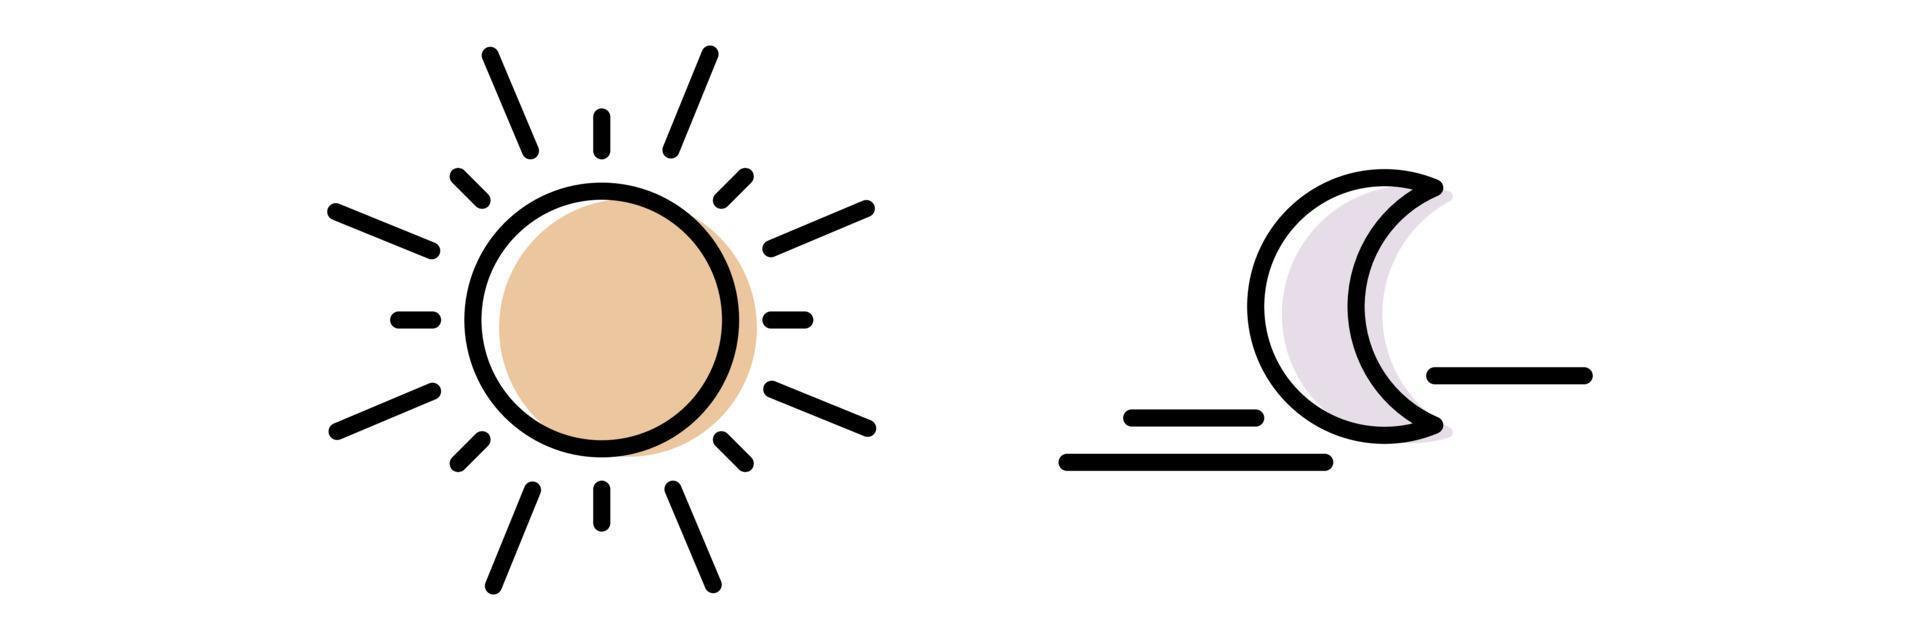 verander dag- en nachtcycluslijnpictogram. bewegingspad zon en maan. klok met de tijd van de dag. cirkel met pijl zon en maan. vector illustratie